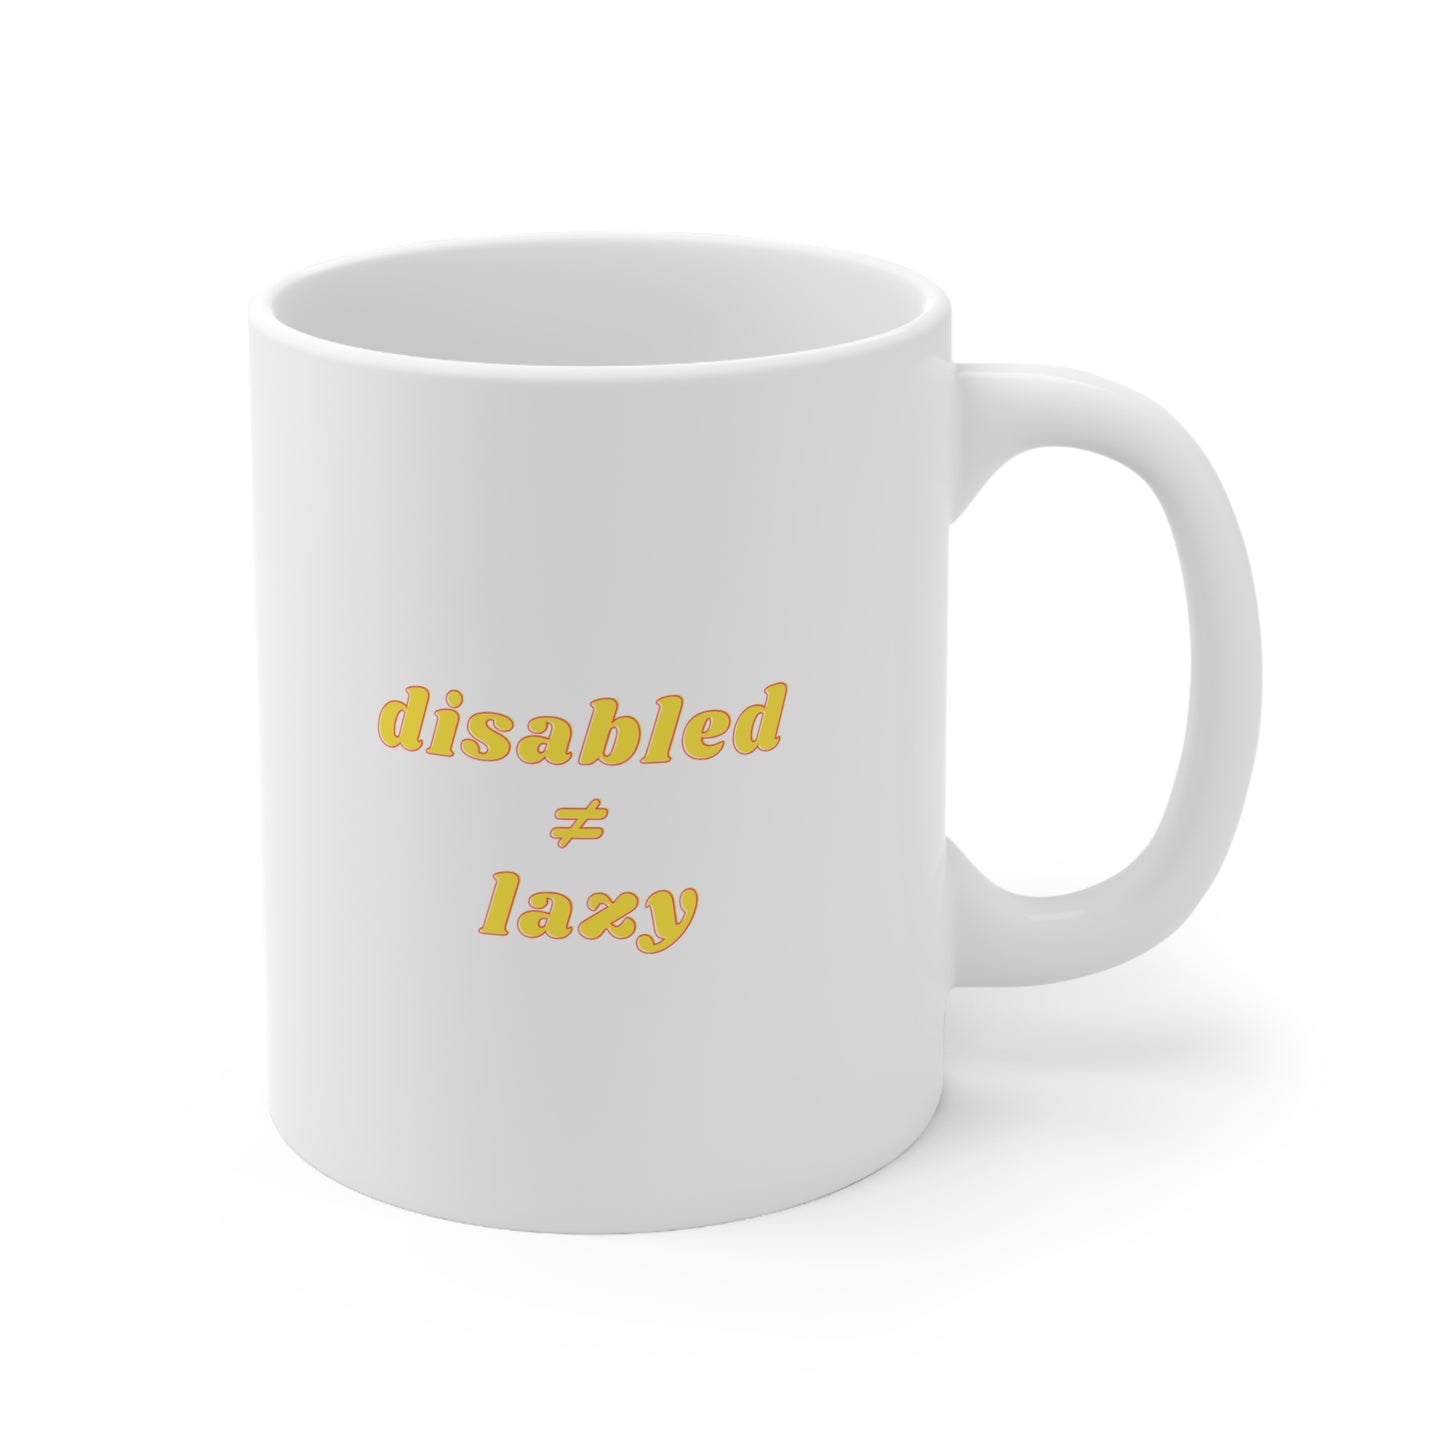 Disabled ≠ Lazy - Cheeky Mug